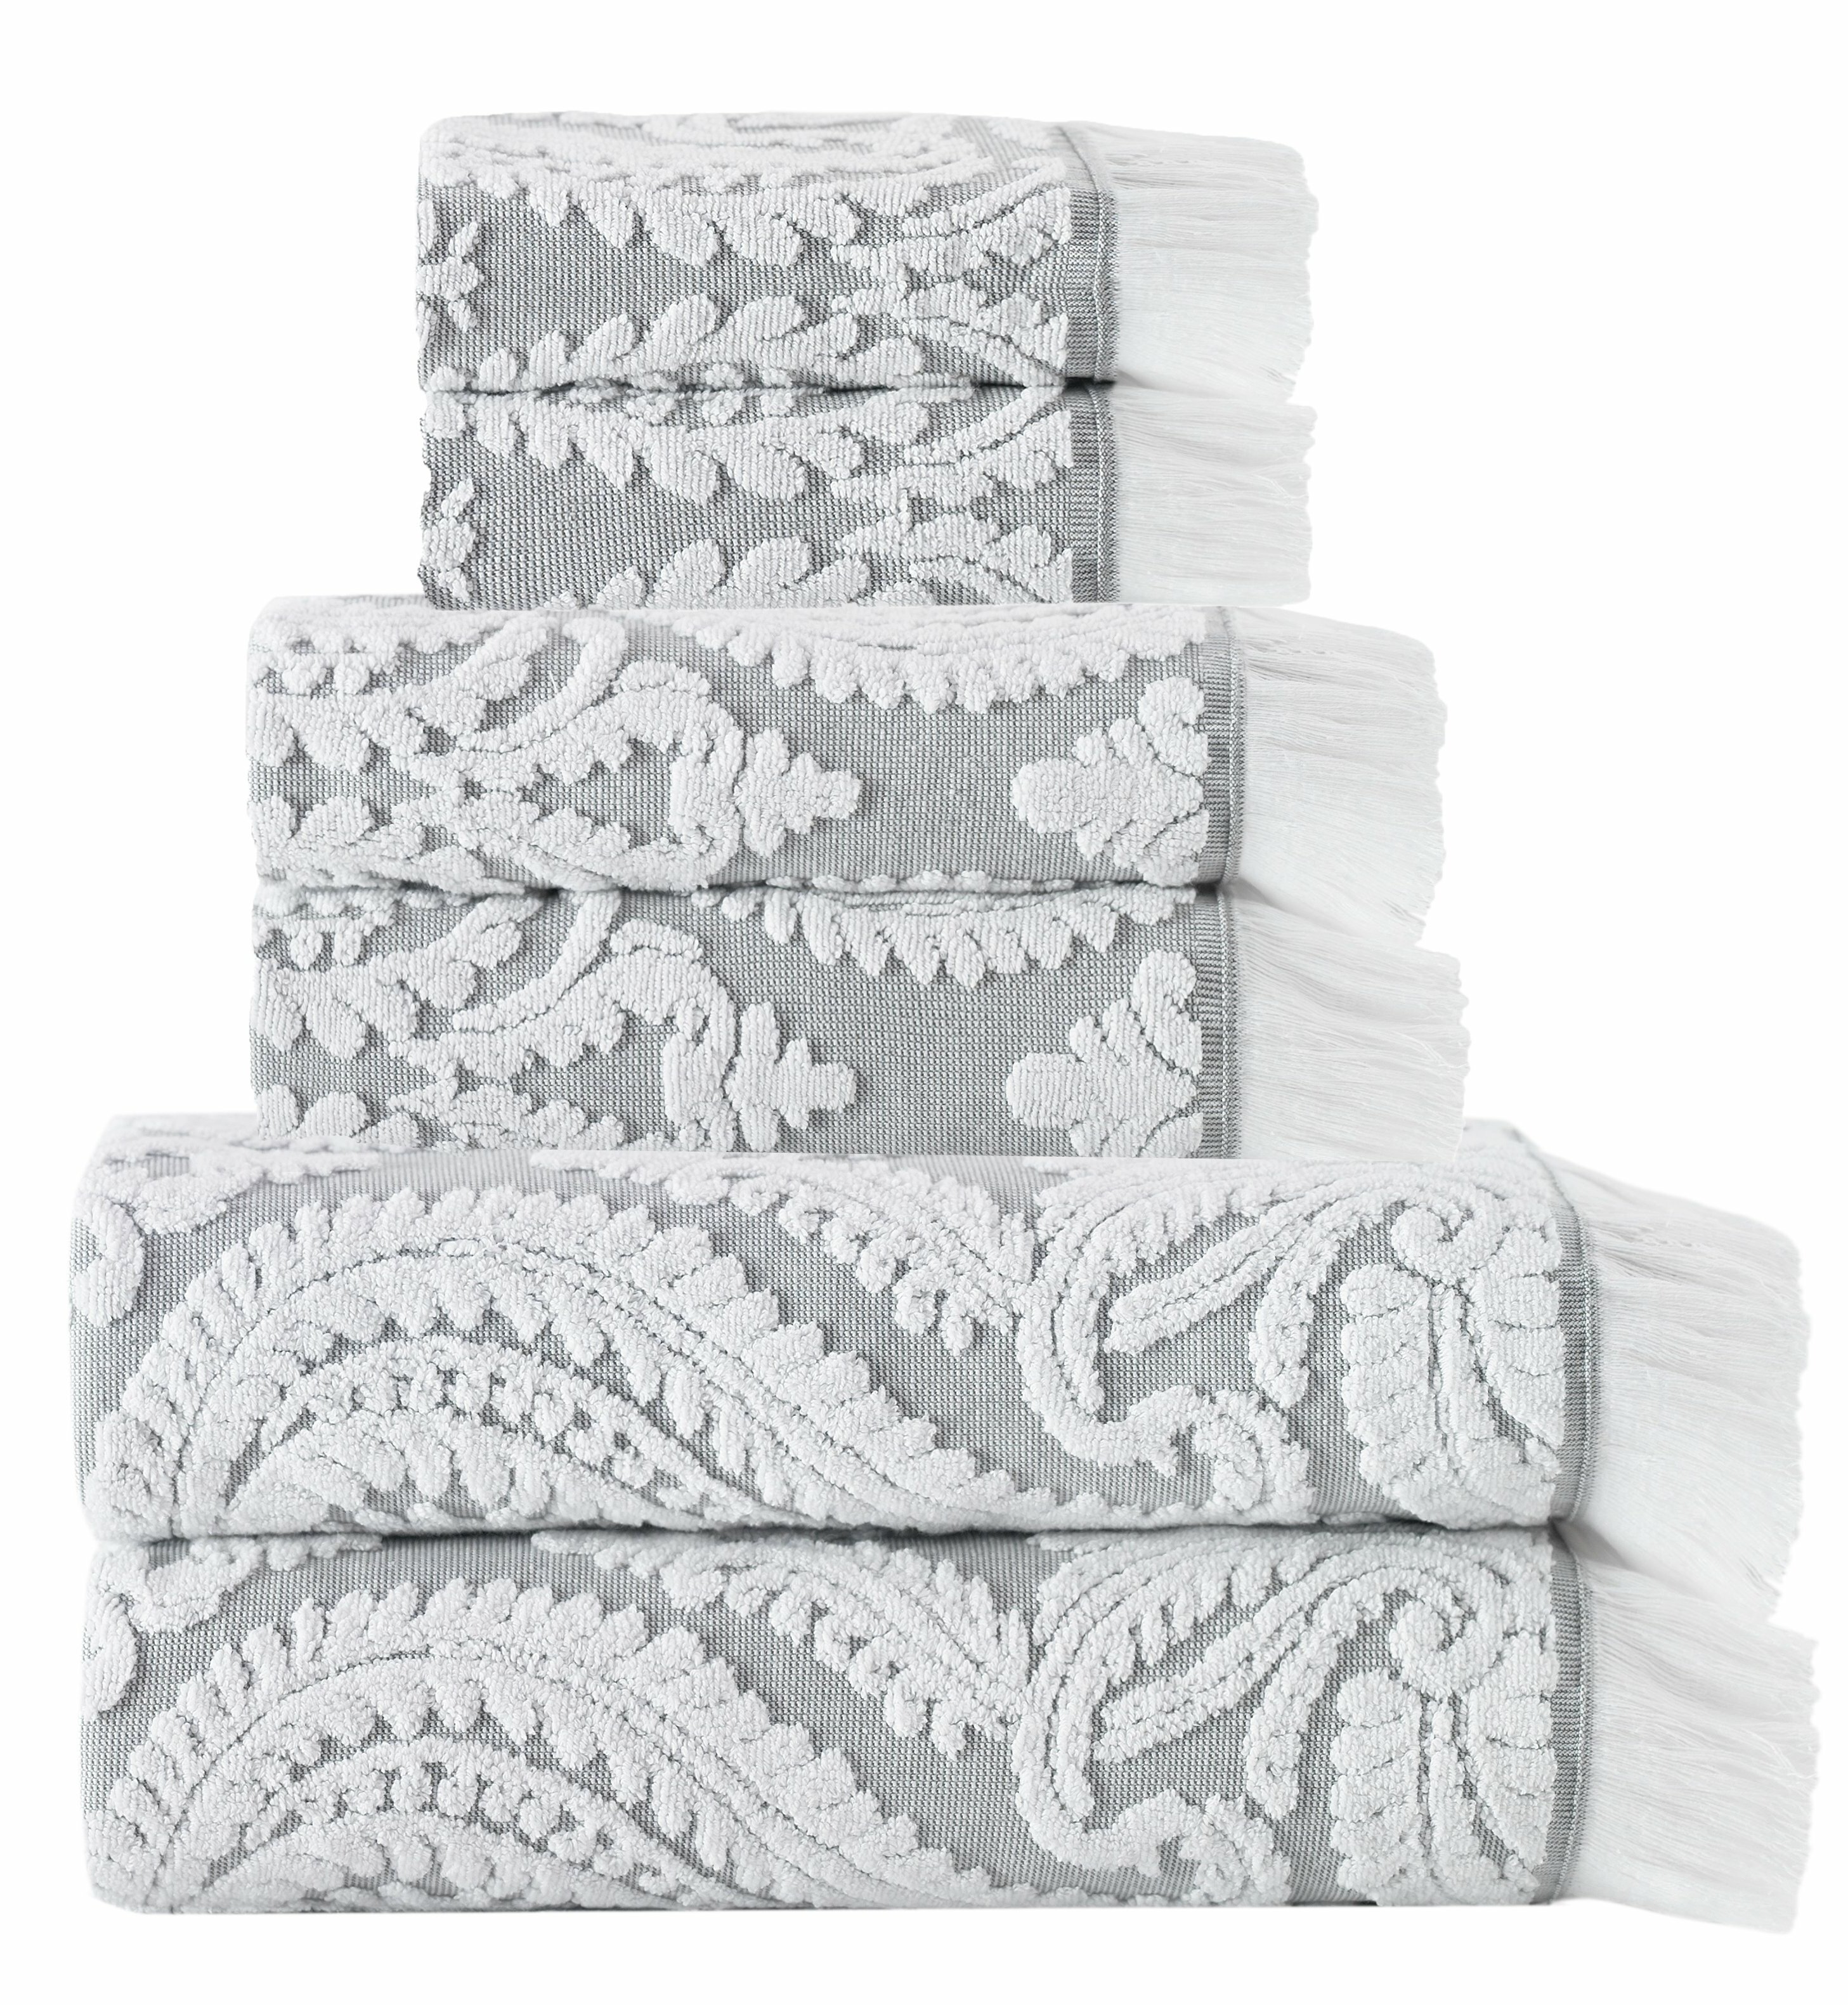 https://assets.wfcdn.com/im/83426436/compr-r85/9686/96865161/devon-6-piece-turkish-cotton-towel-set.jpg